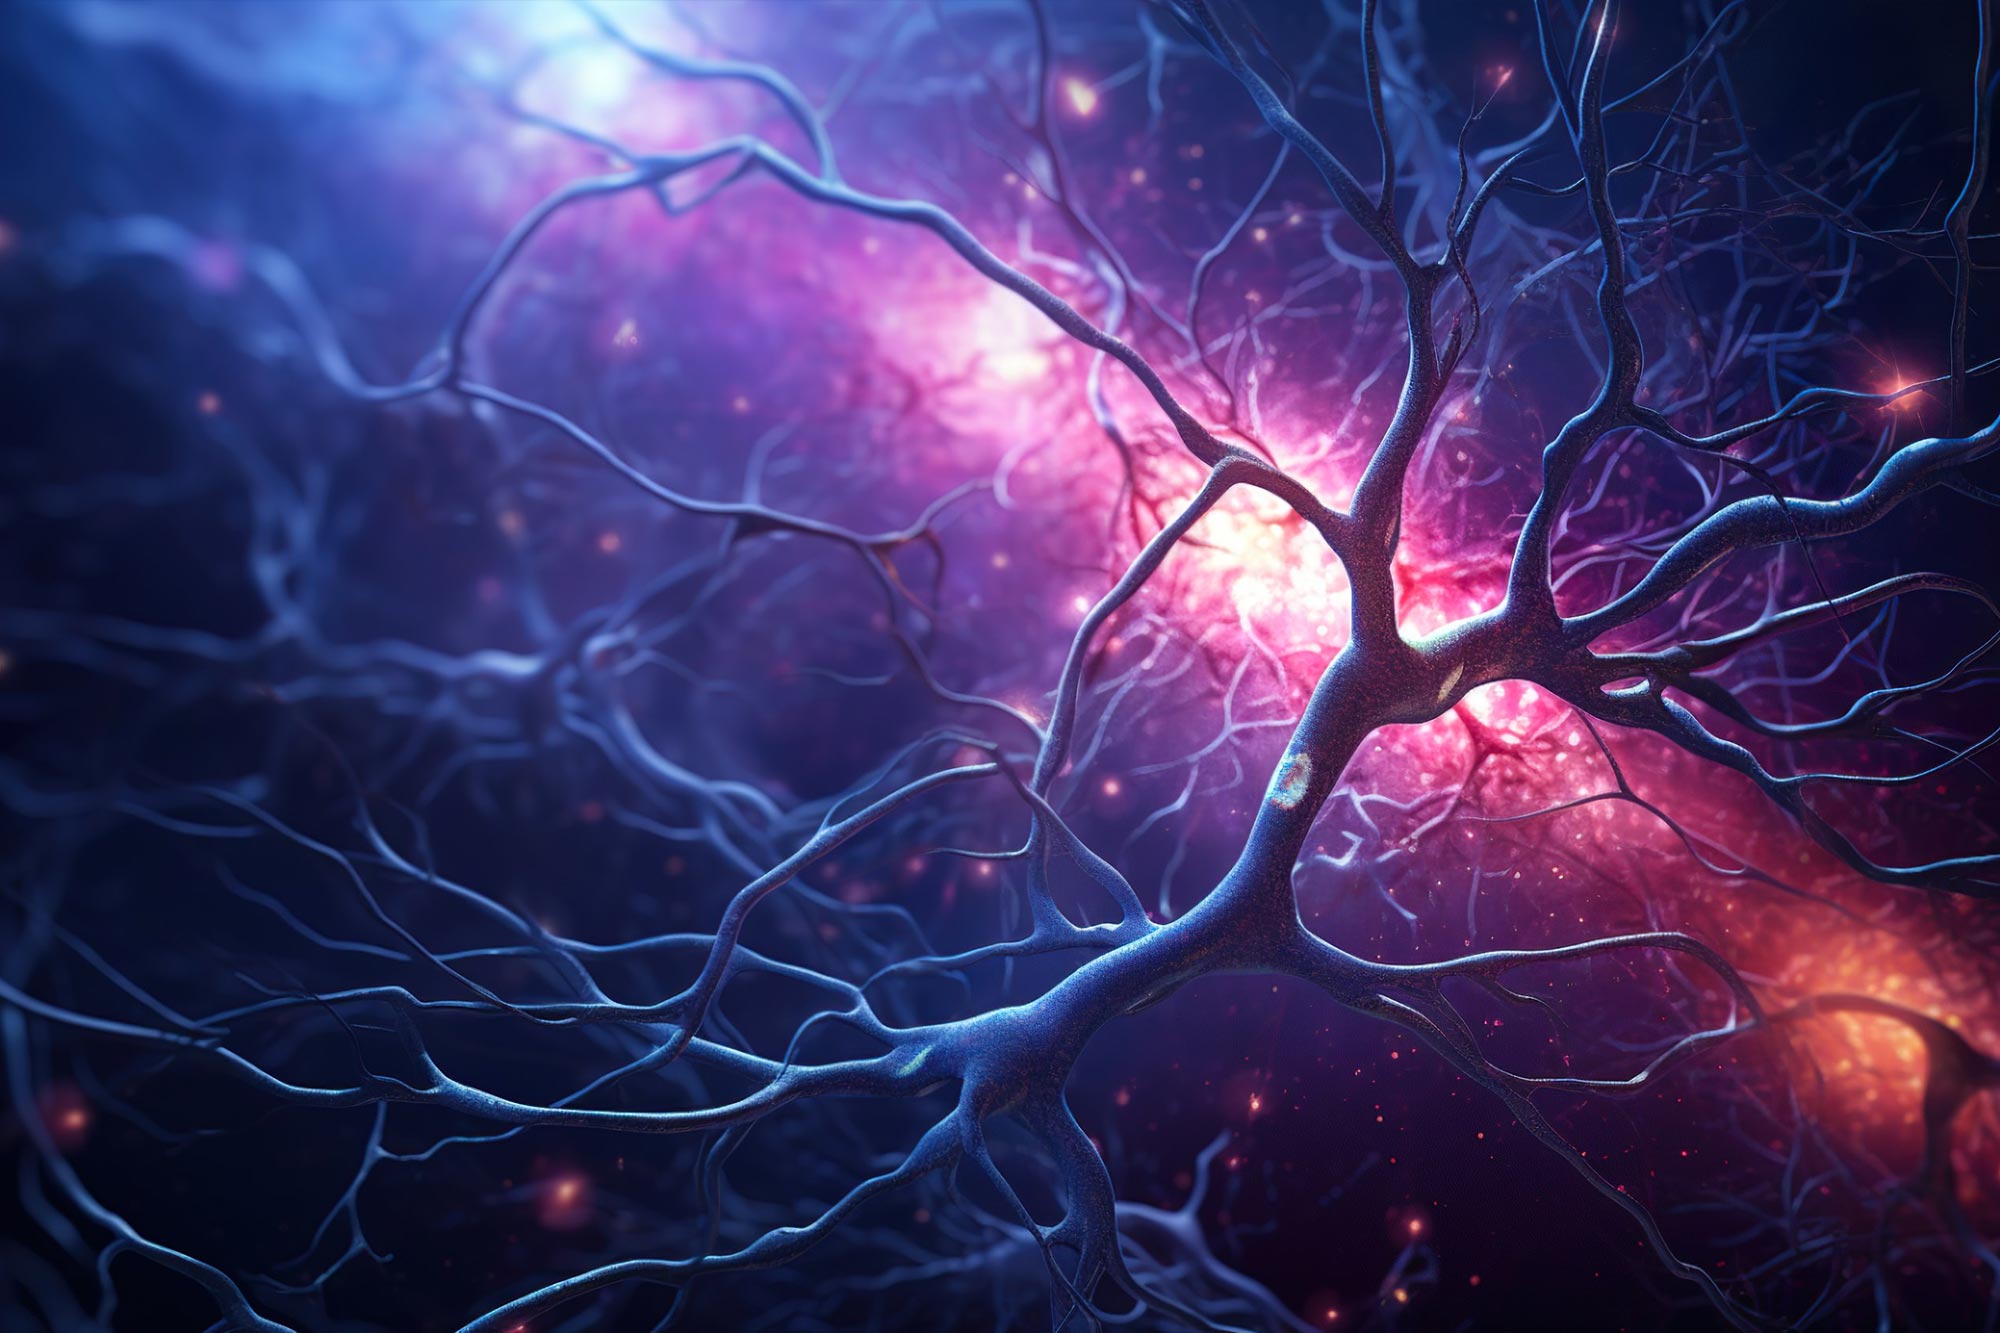 Un componente vital de una proteína esencial para la integridad estructural de las neuronas: sin que los axones se rompan, las sinapsis mueren